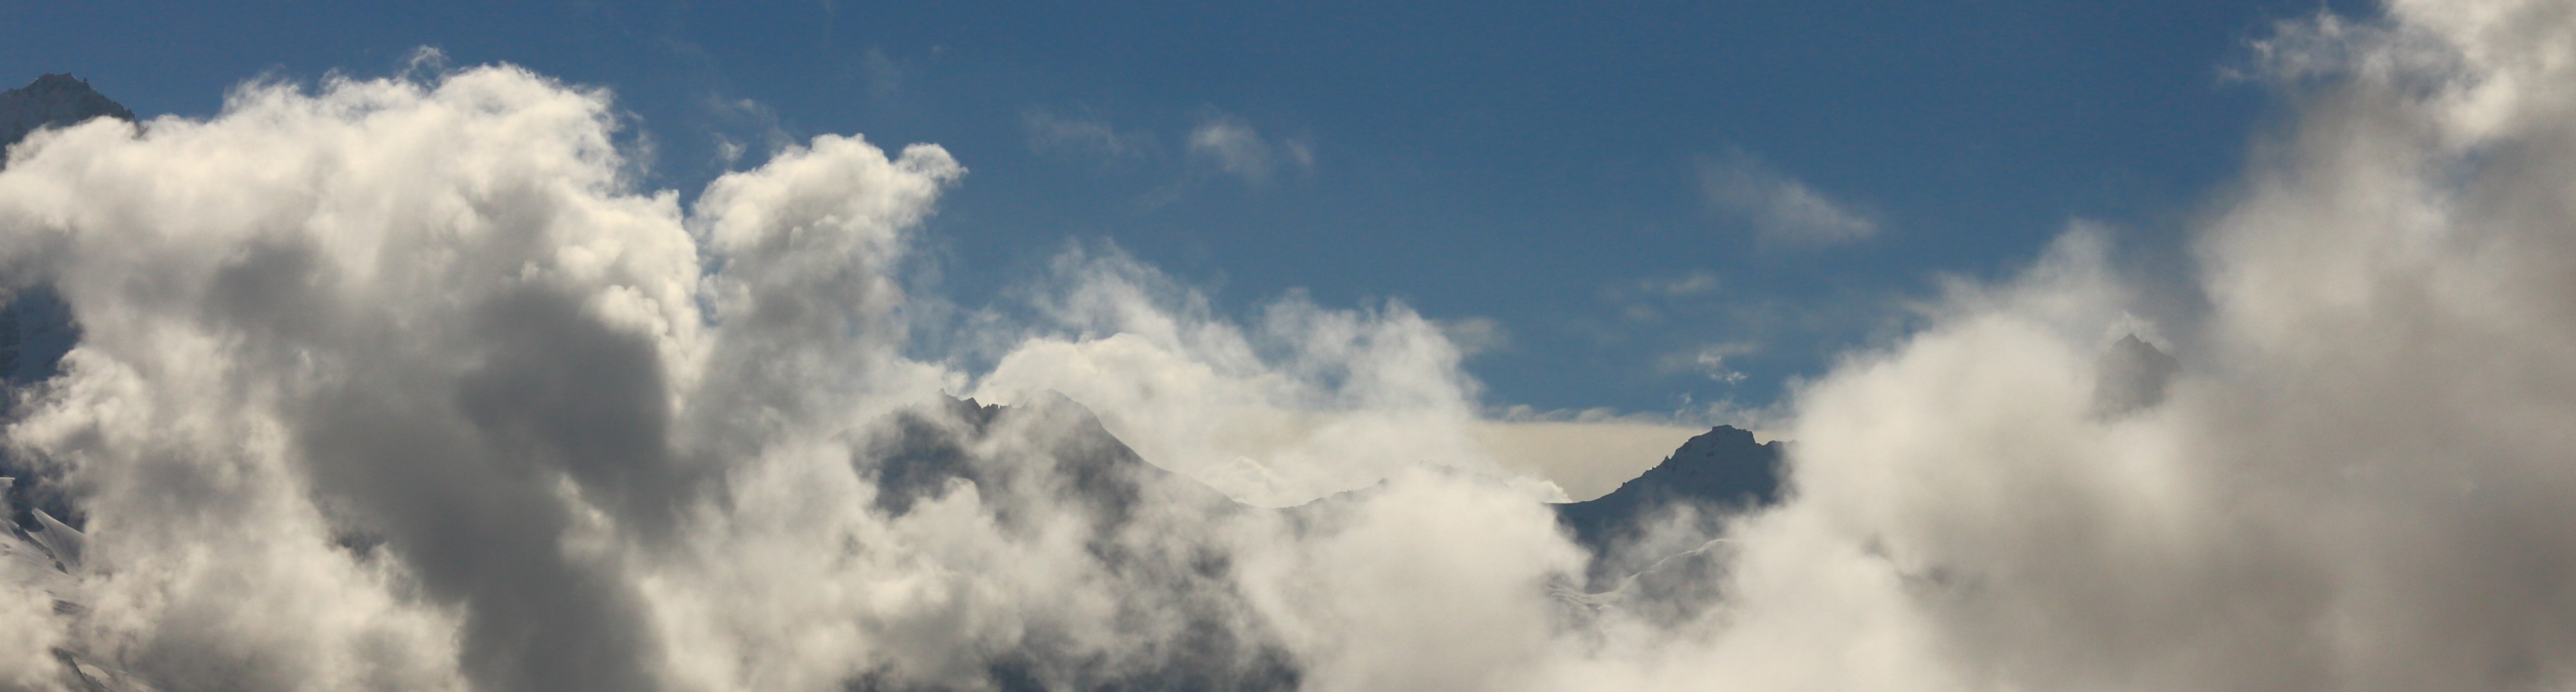 Sorebois Val d'Anniviers (2438 m). Zicht op bergen en wolken boven Zinal 01